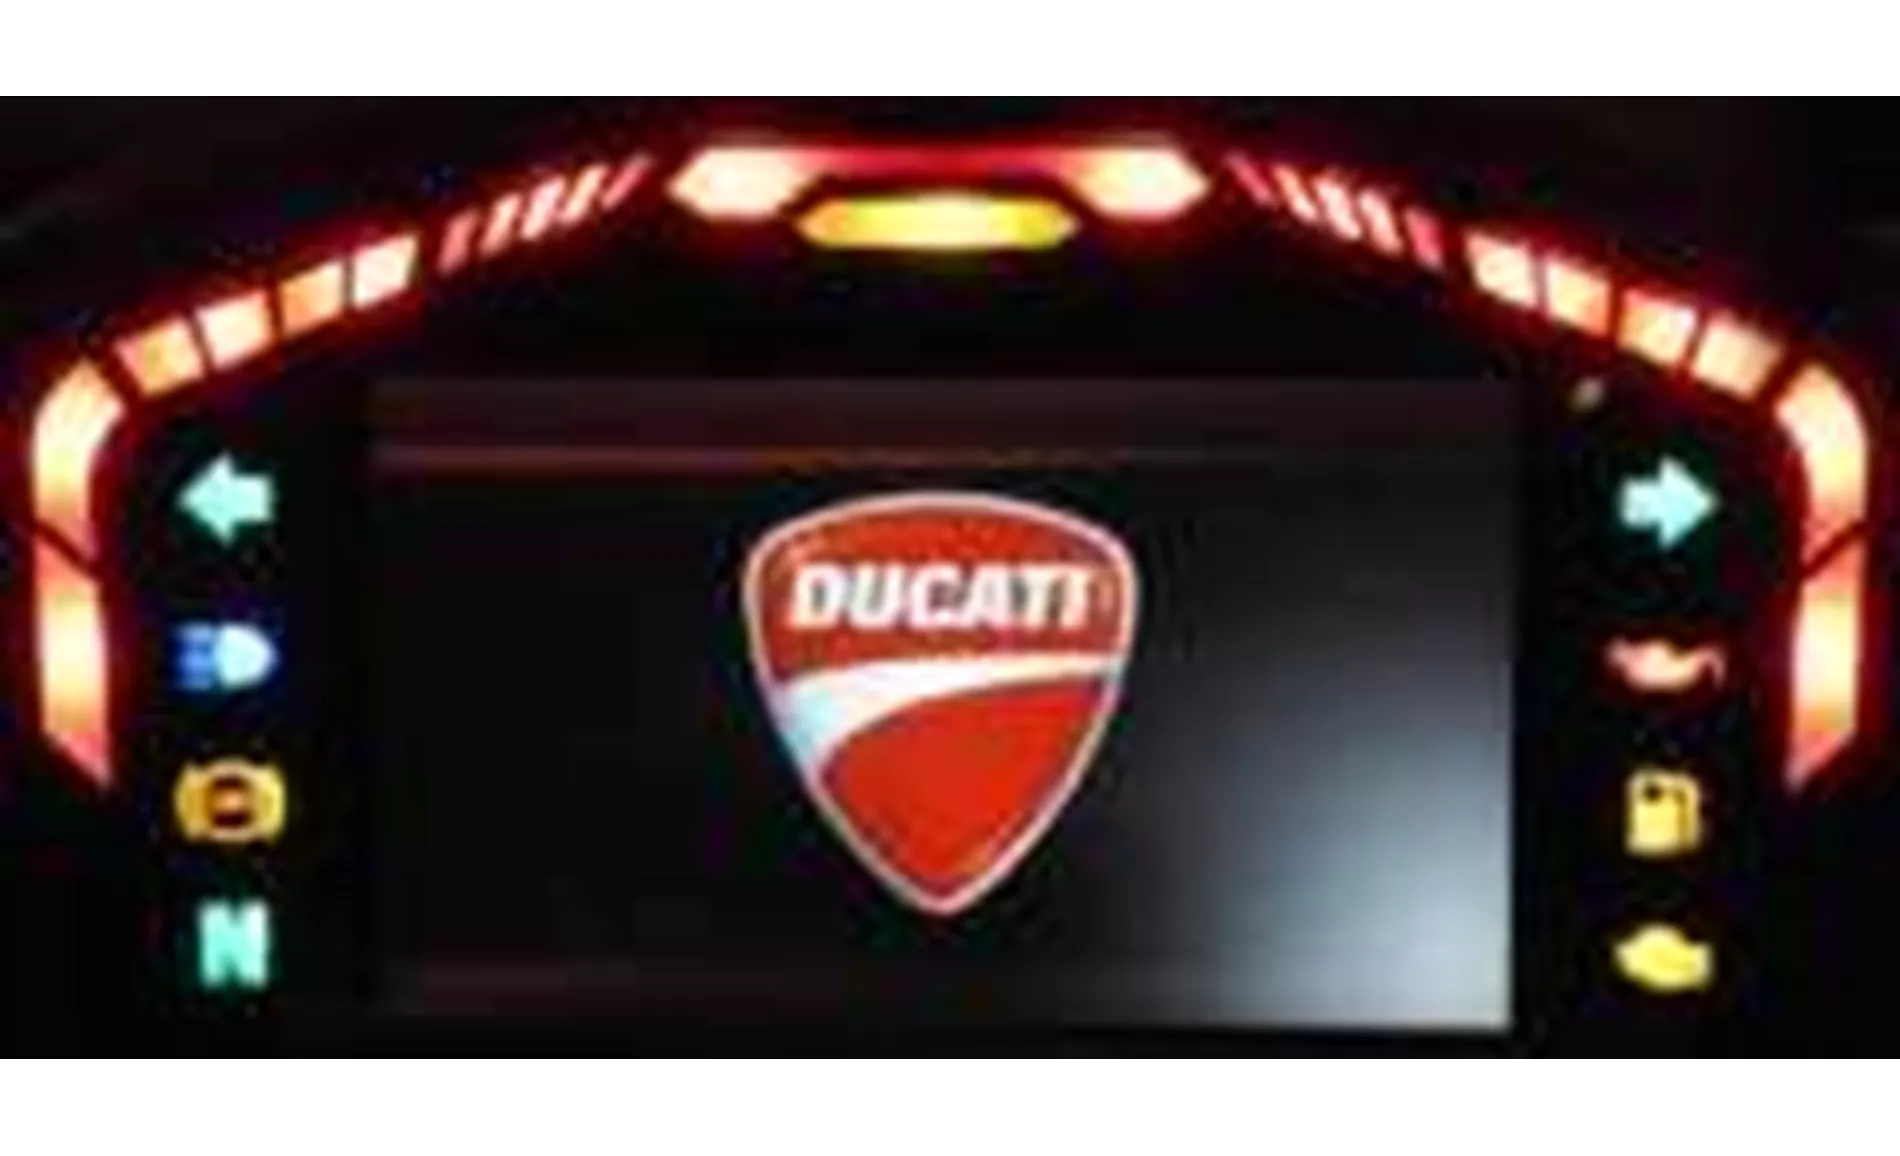 Ducati 1199 Panigale Tricolor 2013